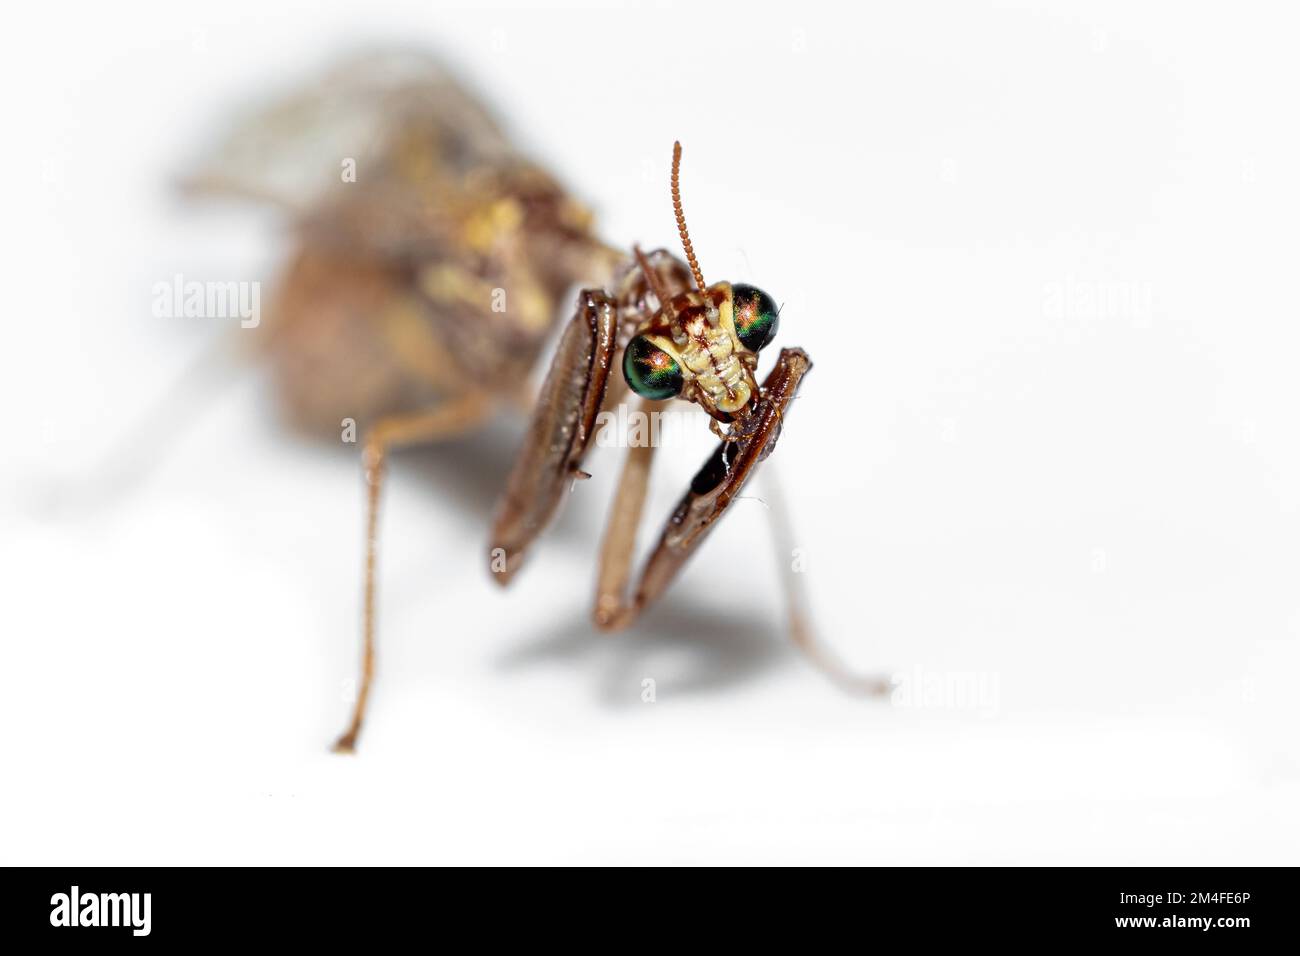 Grazioso insetto isolato di mantis di preghiera del bambino con fondo bianco Foto Stock